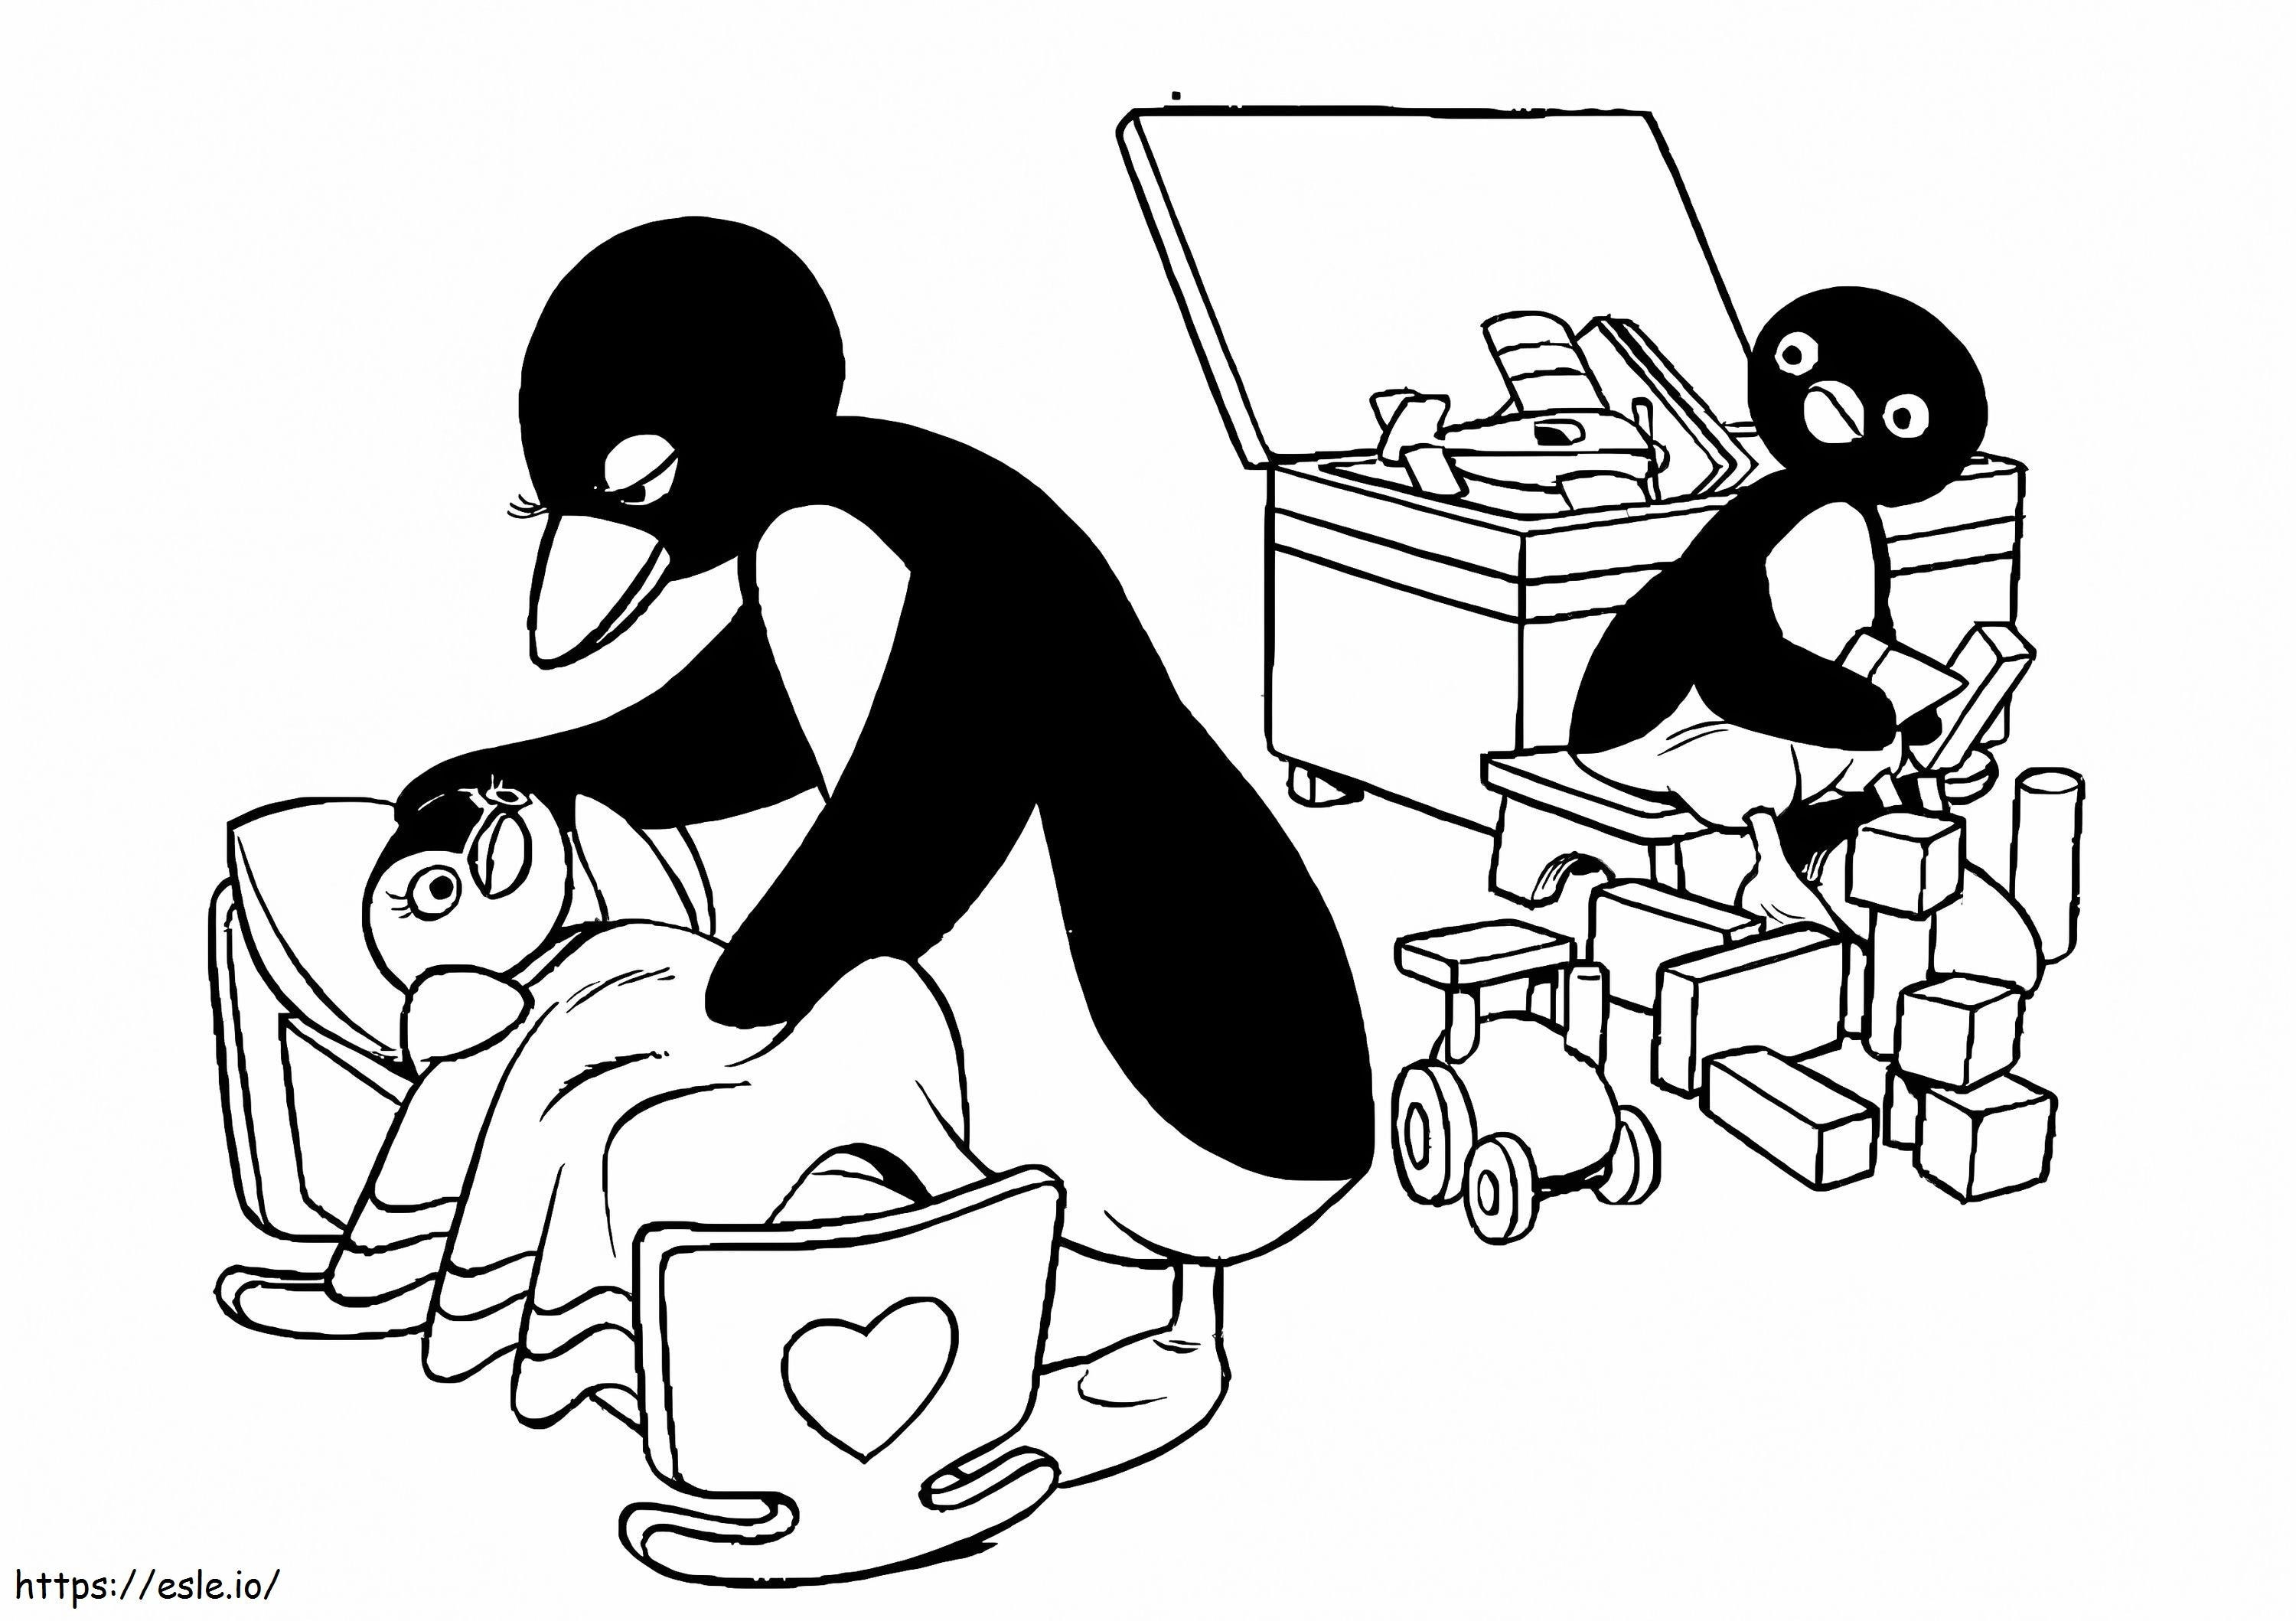 Pingu imprimible para colorear